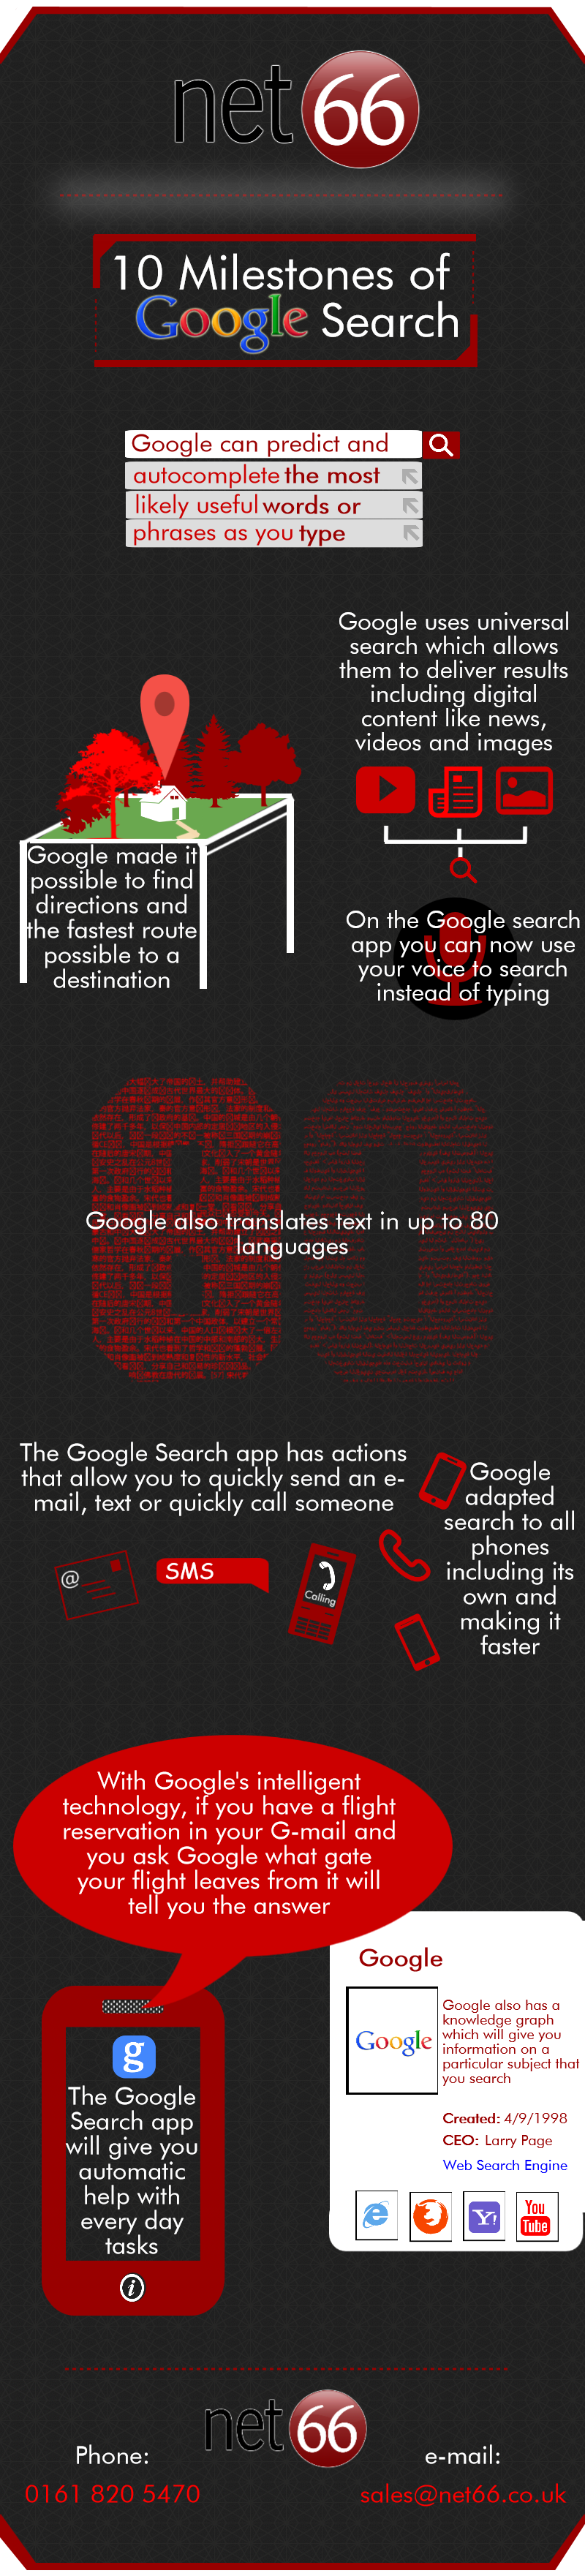 Net66 - Google 10 Milestones Updated